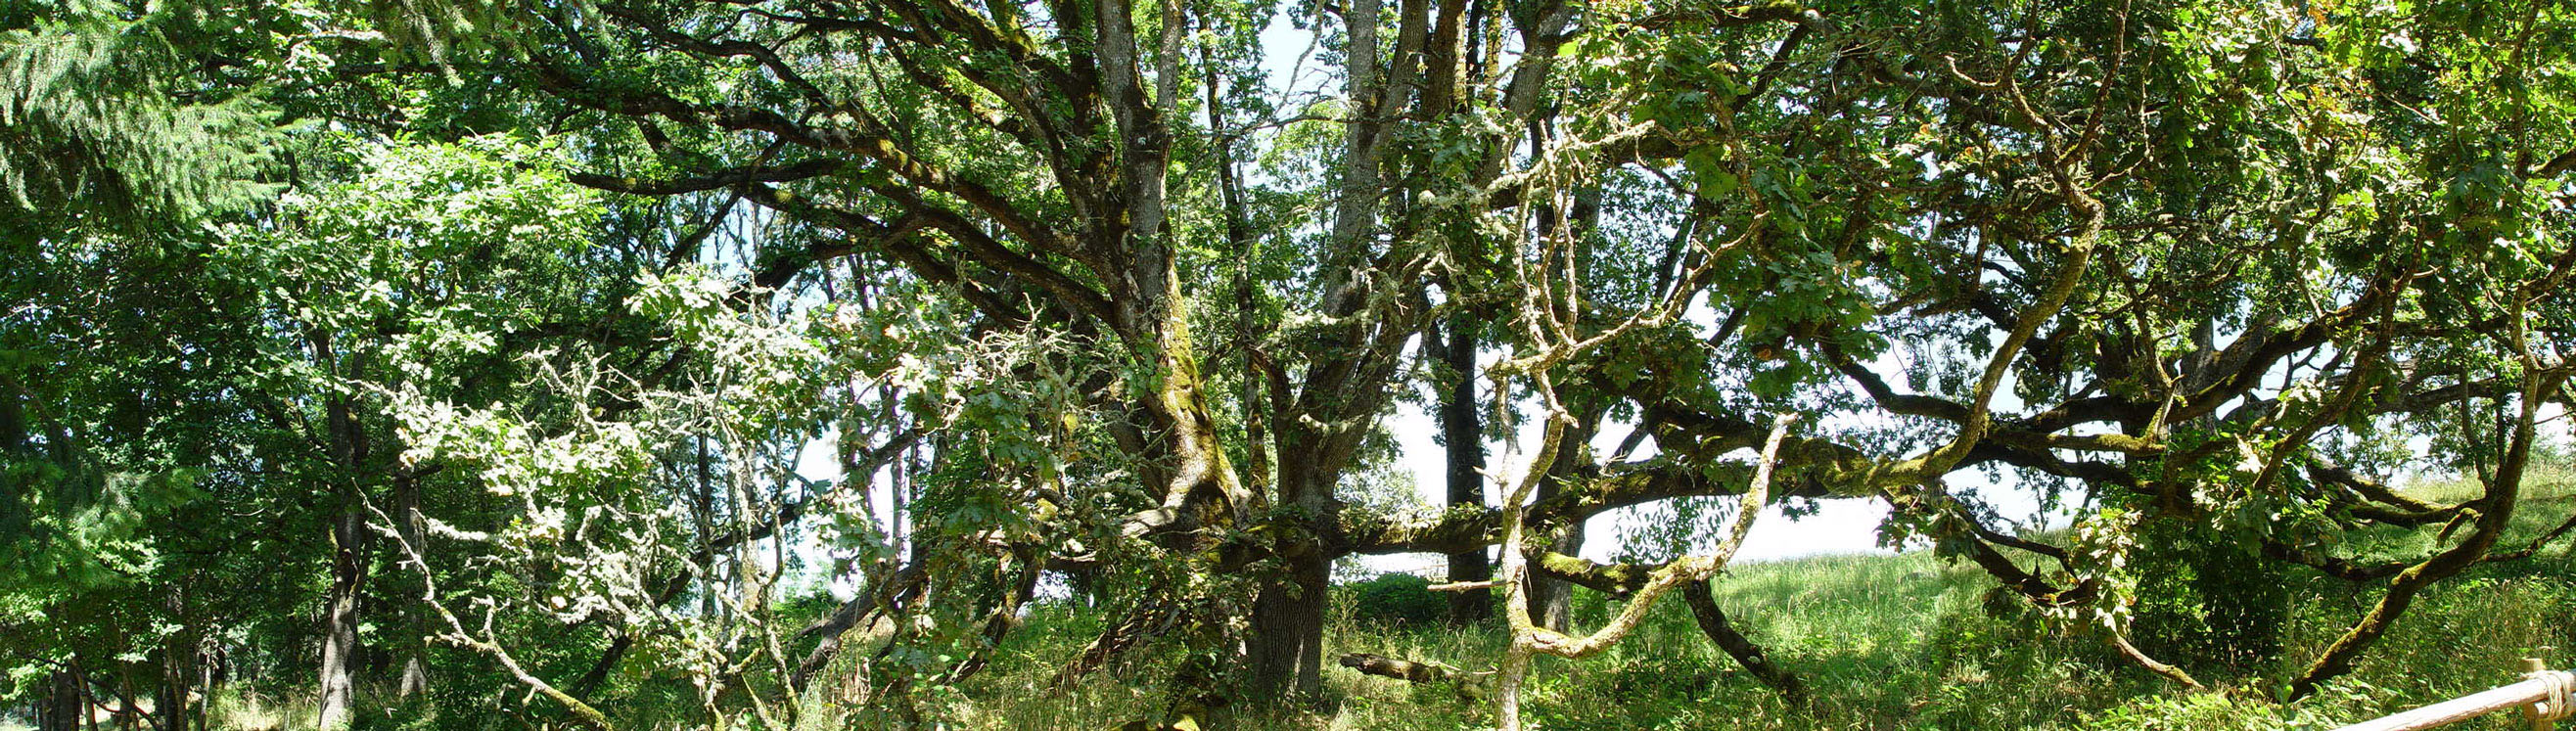 Old Oak trees in Oregon Garden